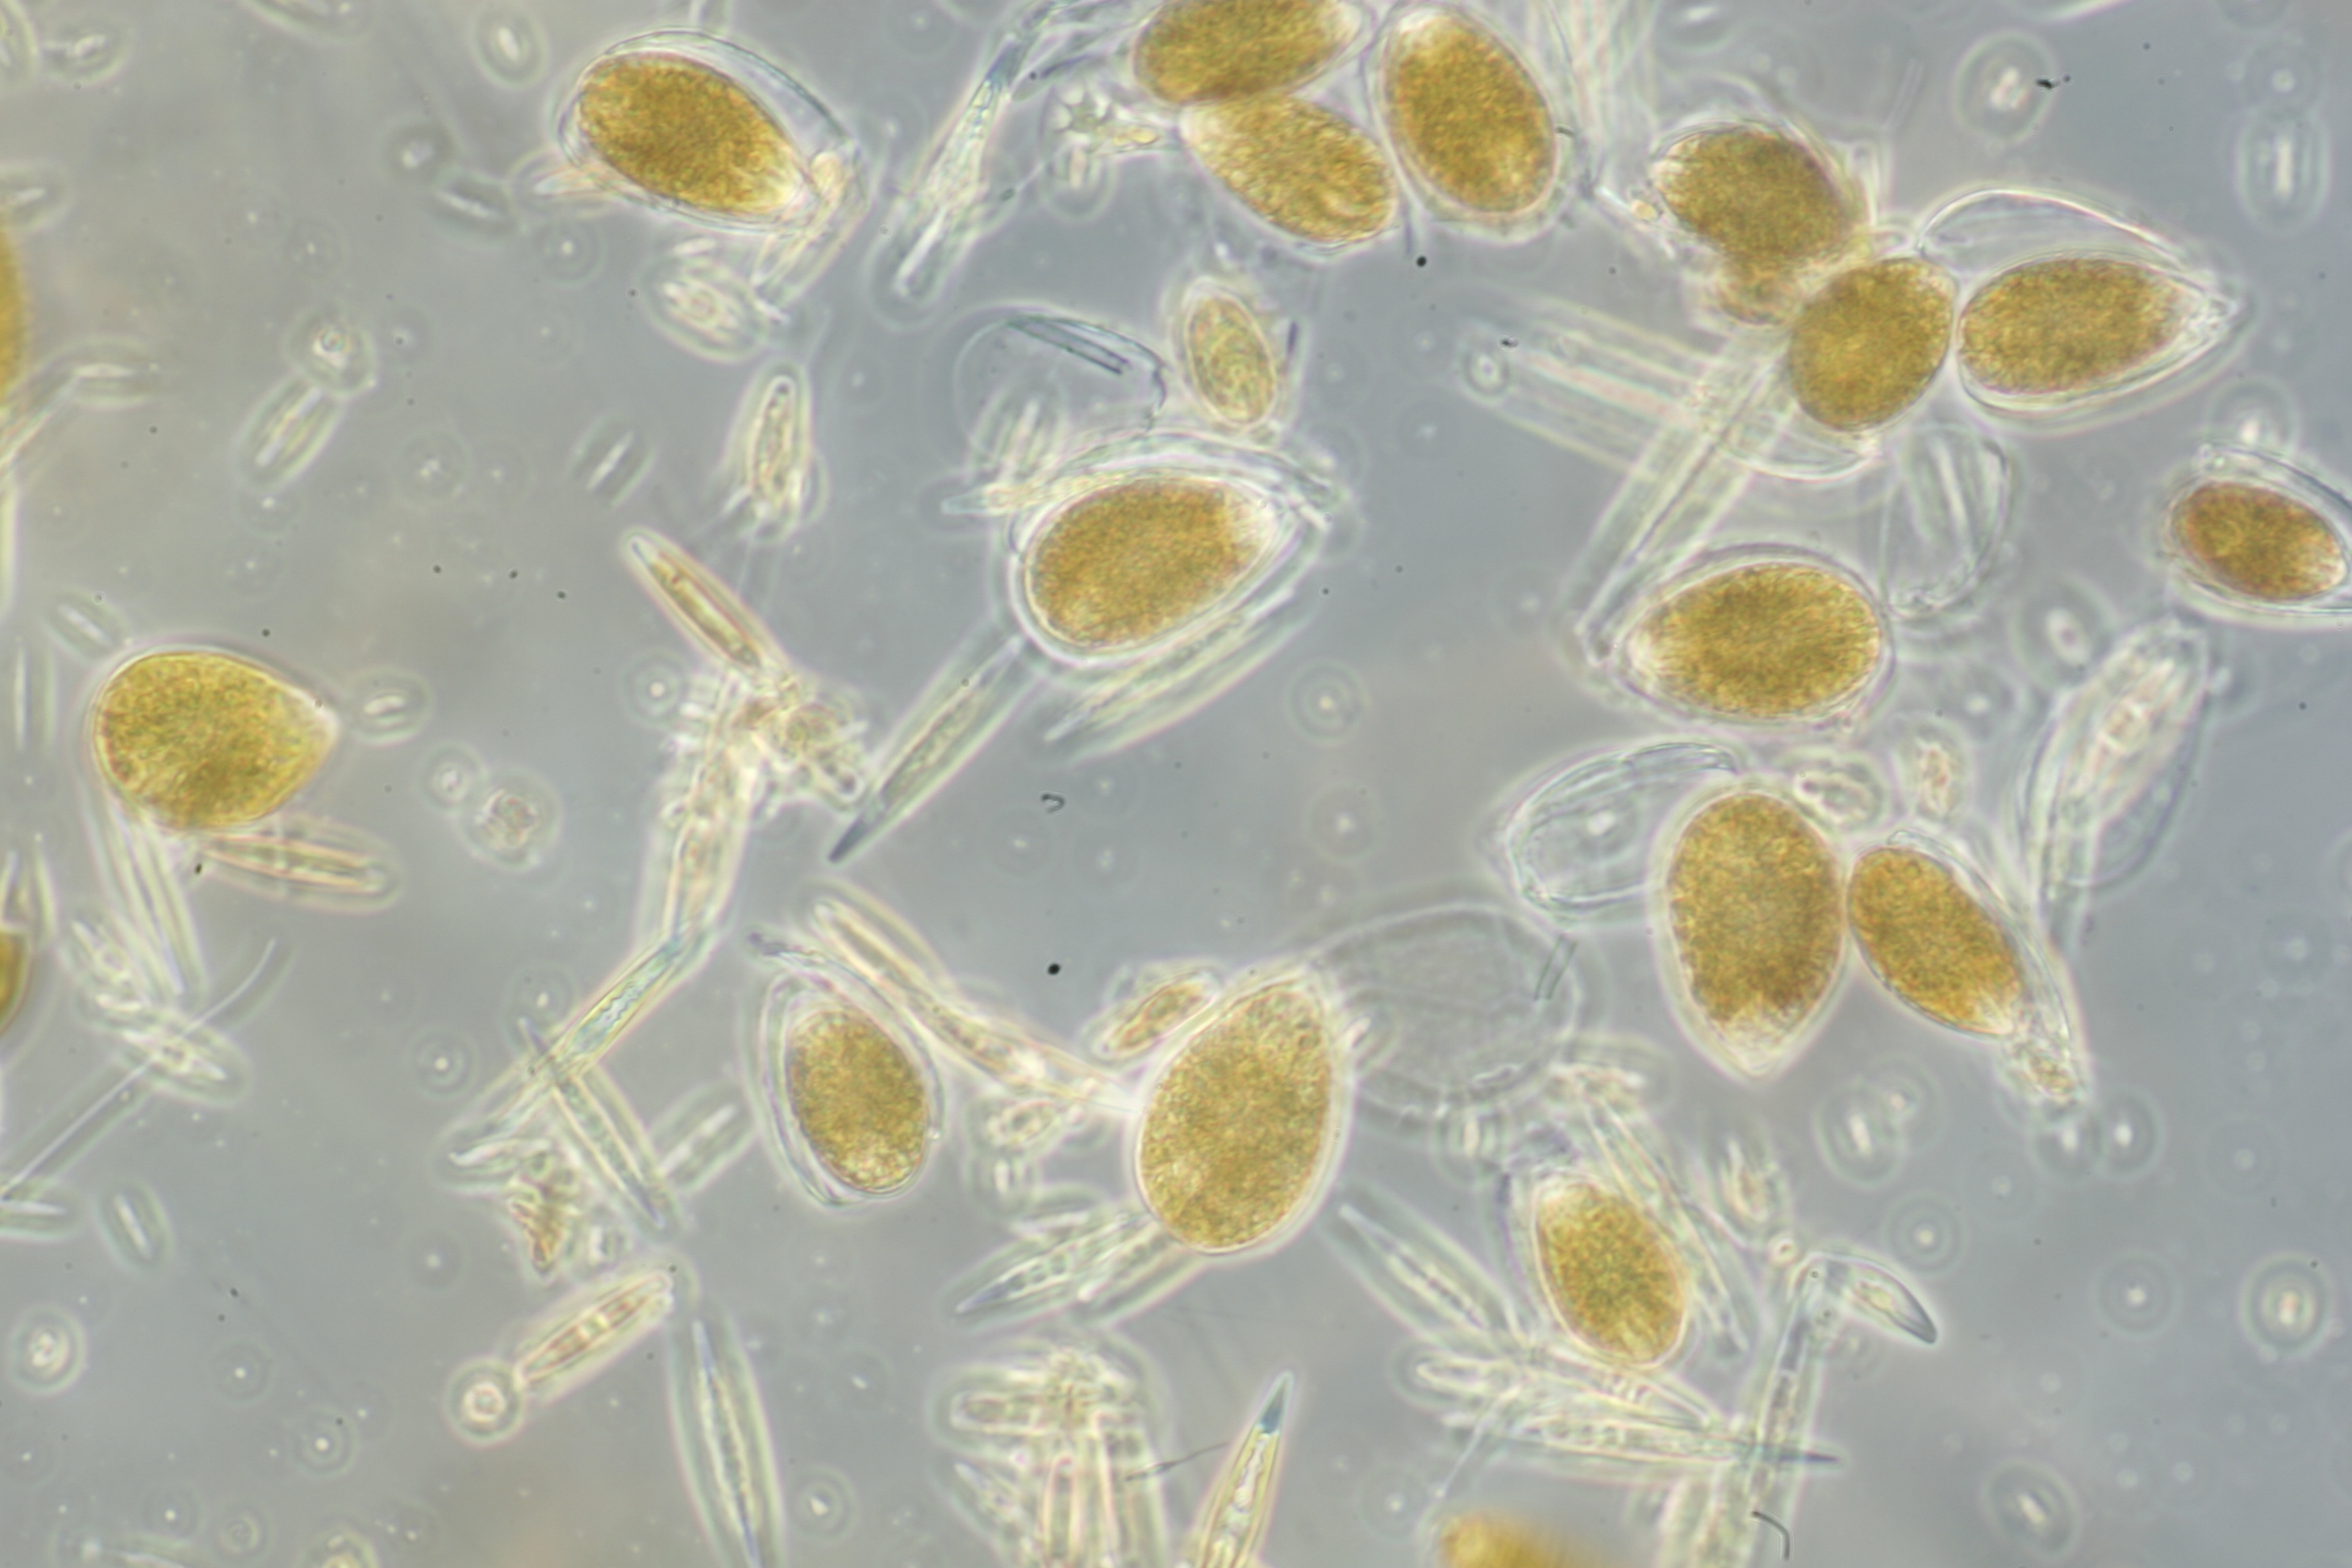 ostreopsis cf. ovata una dinoflagellata bentonica produttrice di biotossine, responsabile di imponenti fioriture associate a intossicazioni umane e morie di organismi marini